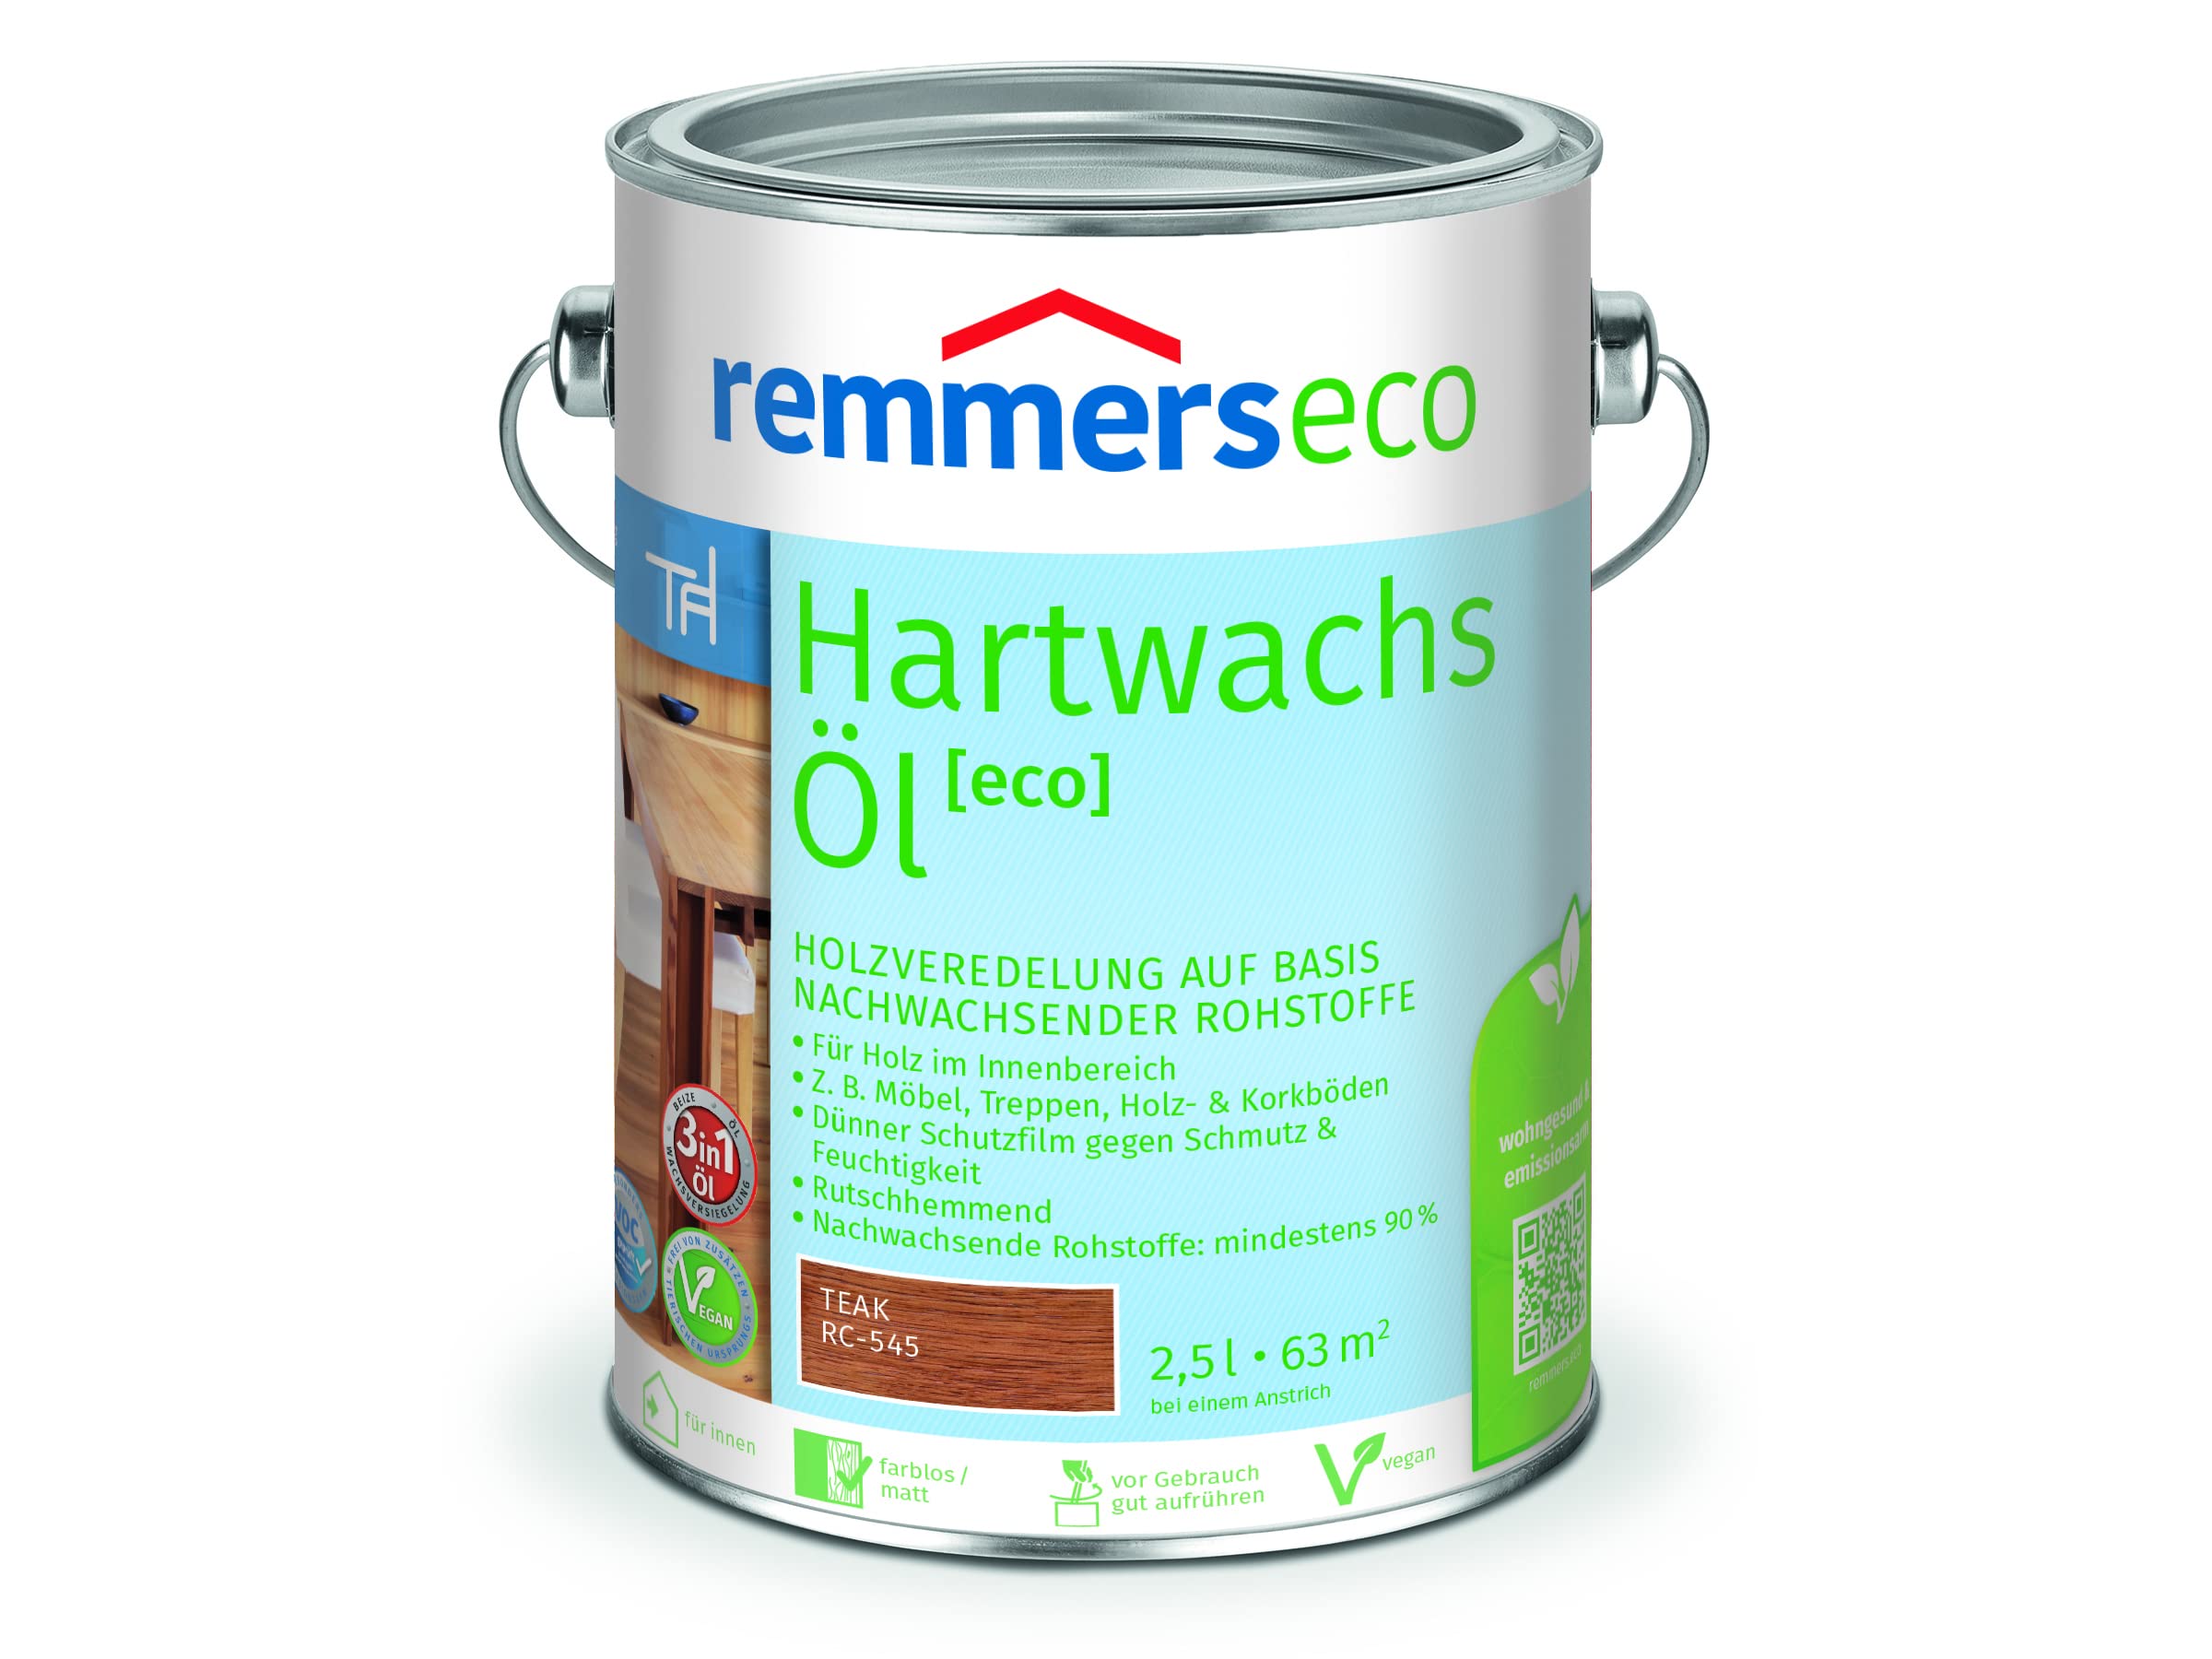 Remmers Hartwachs-Öl [eco] teak, 2,5 Liter, Hartwachsöl für innen, natürliche Basis, Beize, Öl und Versiegelung in einem, nachhaltig, vegan